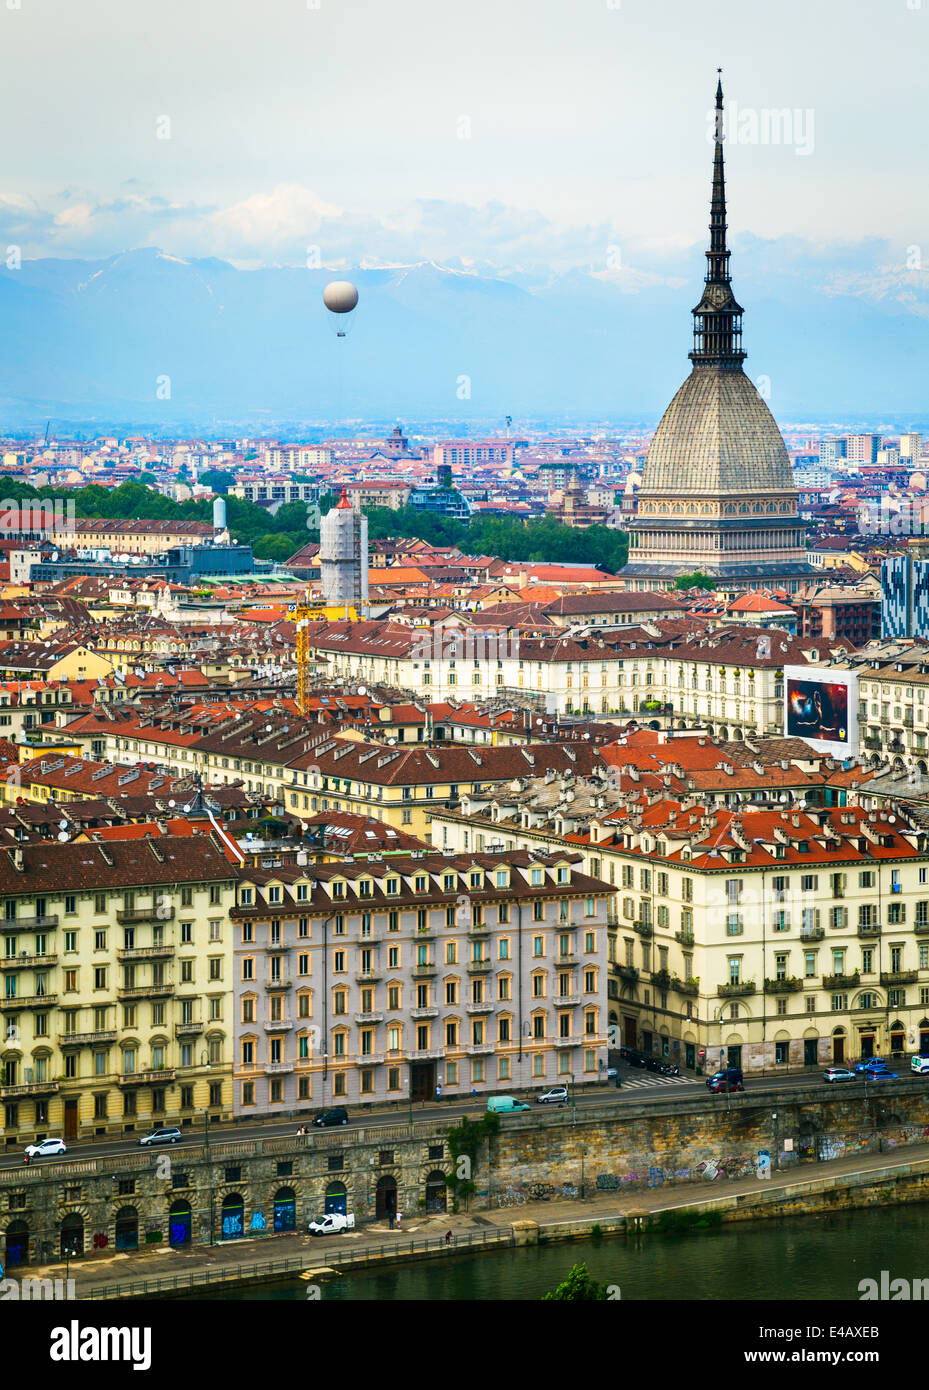 Blick auf die Stadt von Turin, Italien von Convento Monte dei Cappuccini. Der Fluss Po im Vordergrund. Auf der linken Seite erhebt sich ein Luftballon in den Himmel. Auf der rechten Seite den Turm der Mole Antonelliana. Die Alpen erheben sich im Hintergrund. Stockfoto